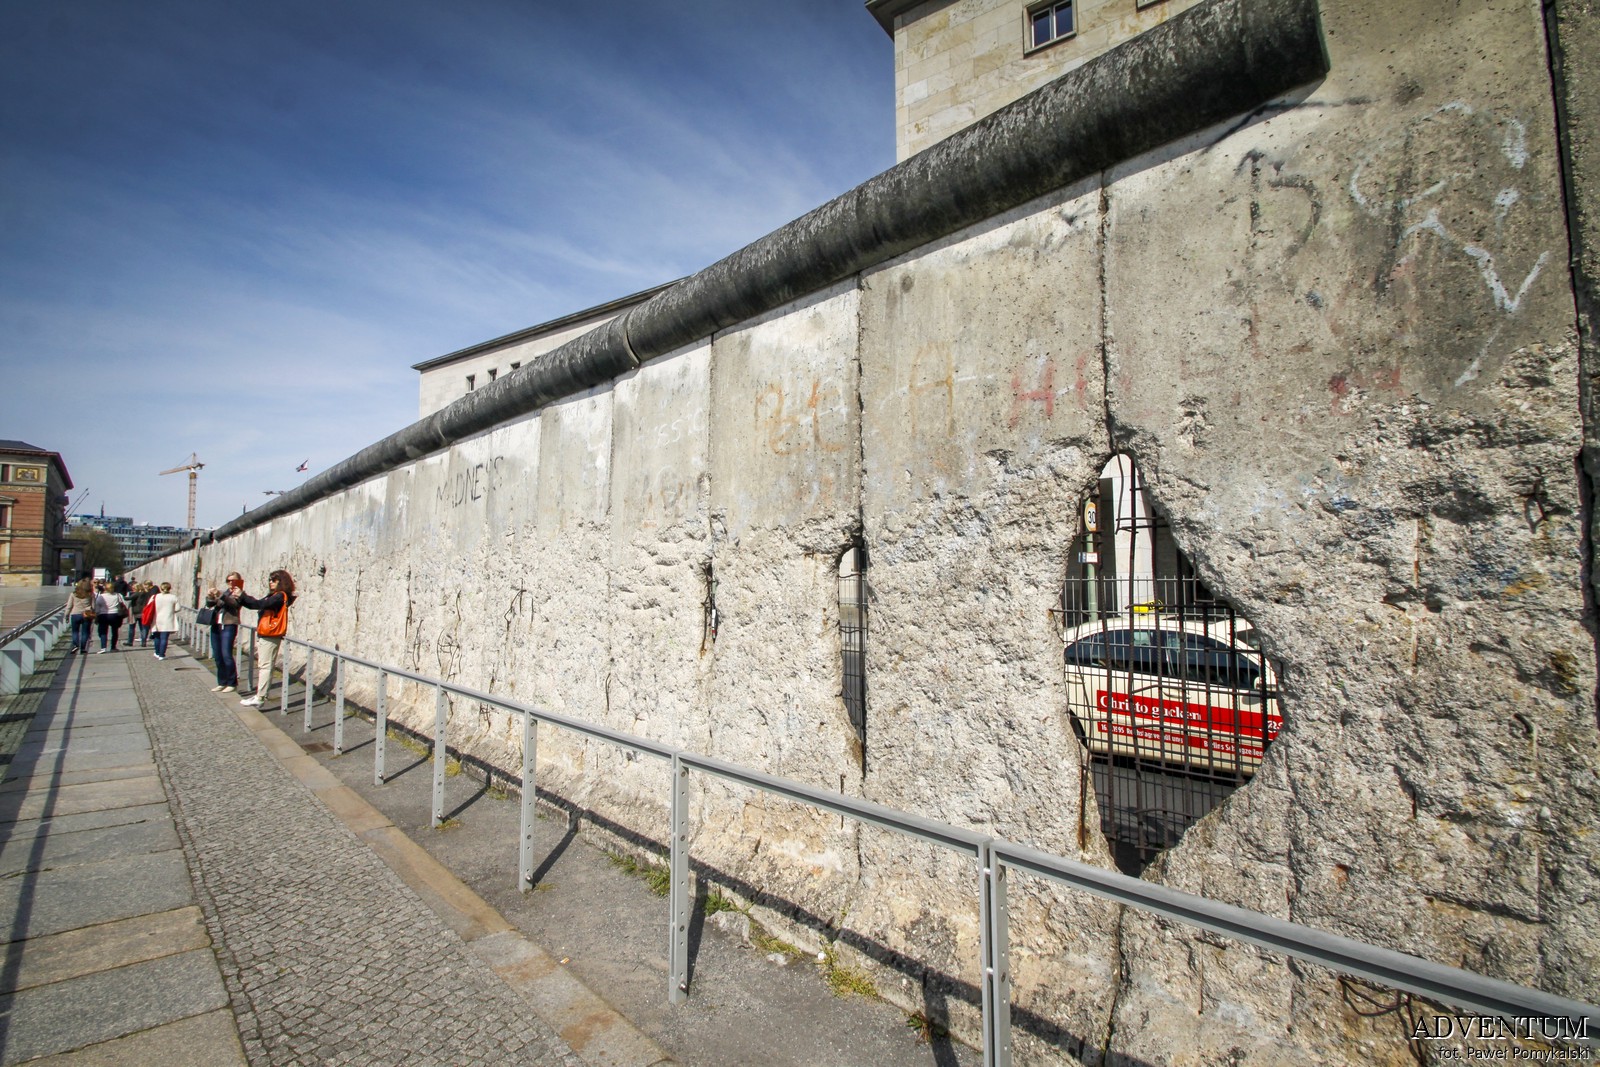 Mur Berliński, Berlin, Niemcy, Ciekawostki, Dlaczego powstał, co miał na celu